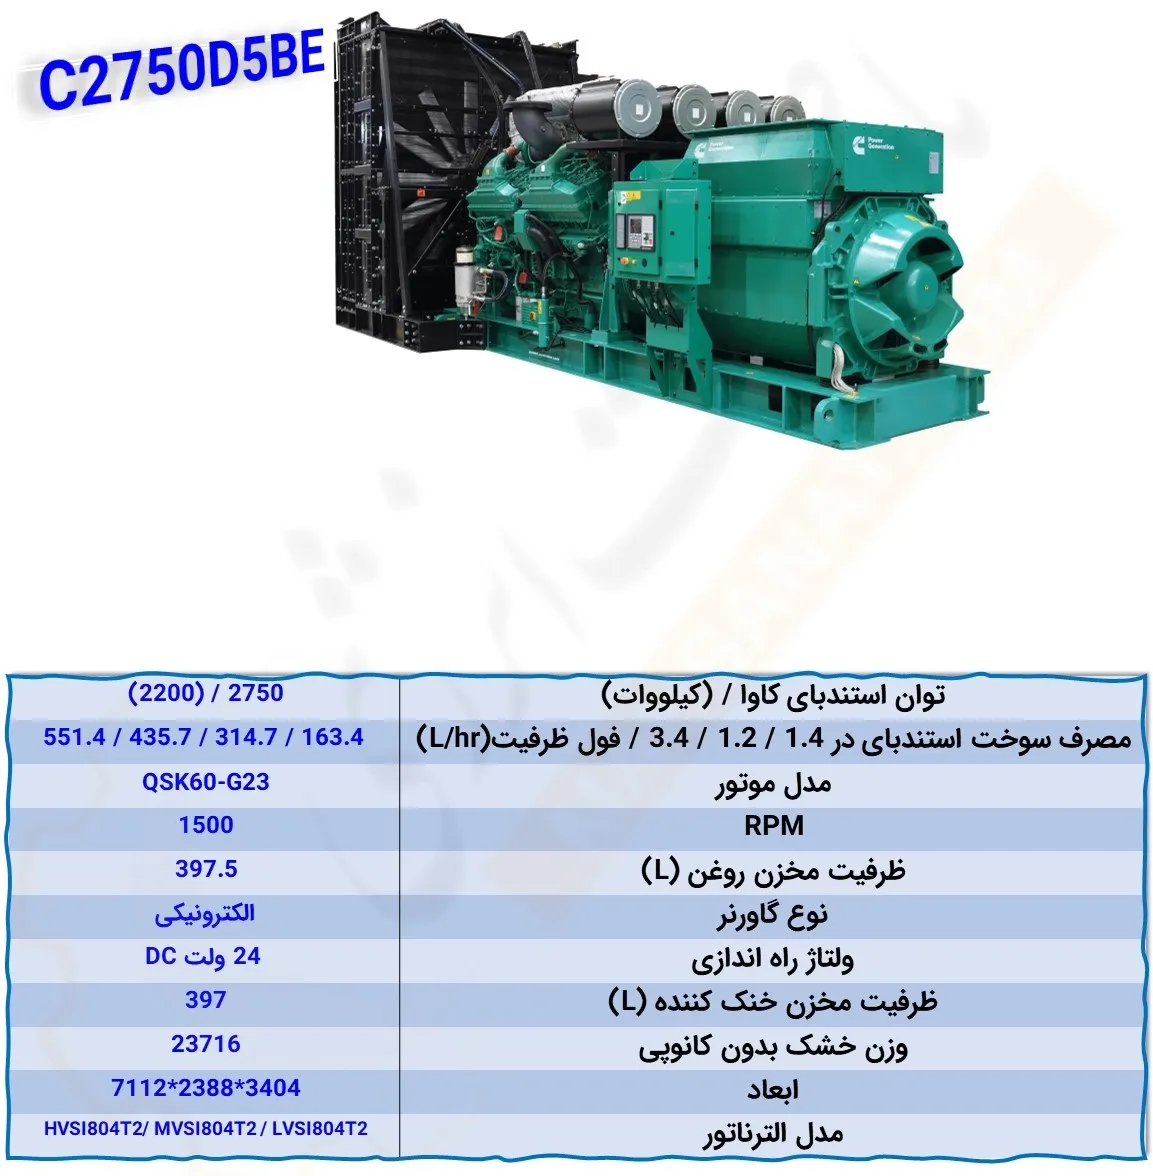 C2750D5BE - ماه صنعت انرژی